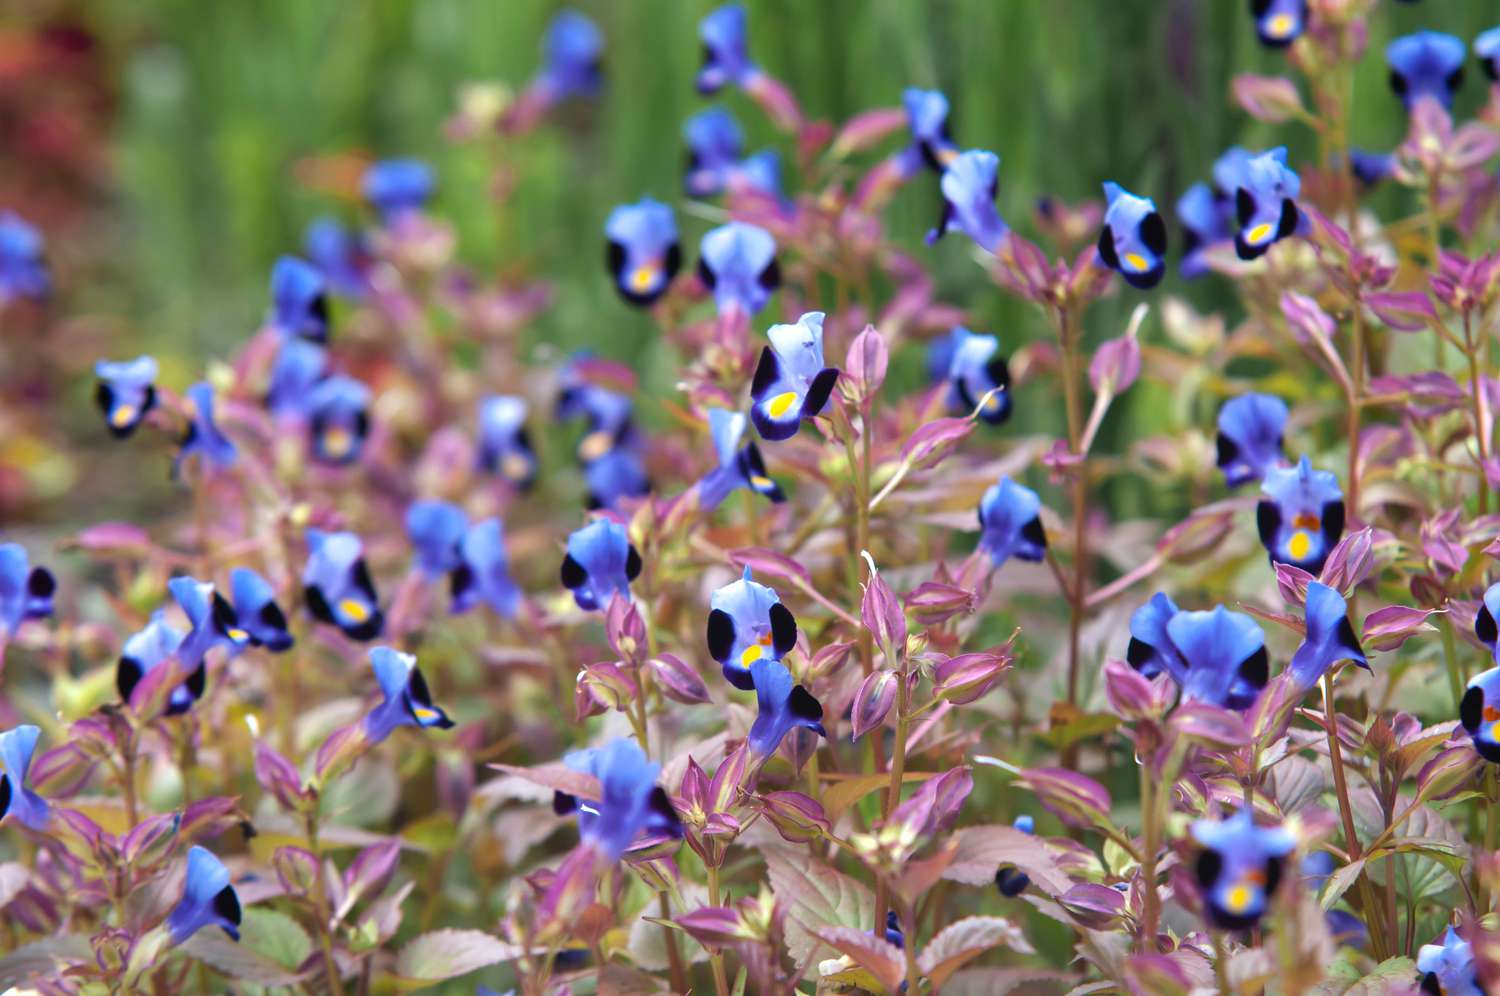 Plante Torenia à petites fleurs bleu-violet et noires sur fines tiges à feuilles roses